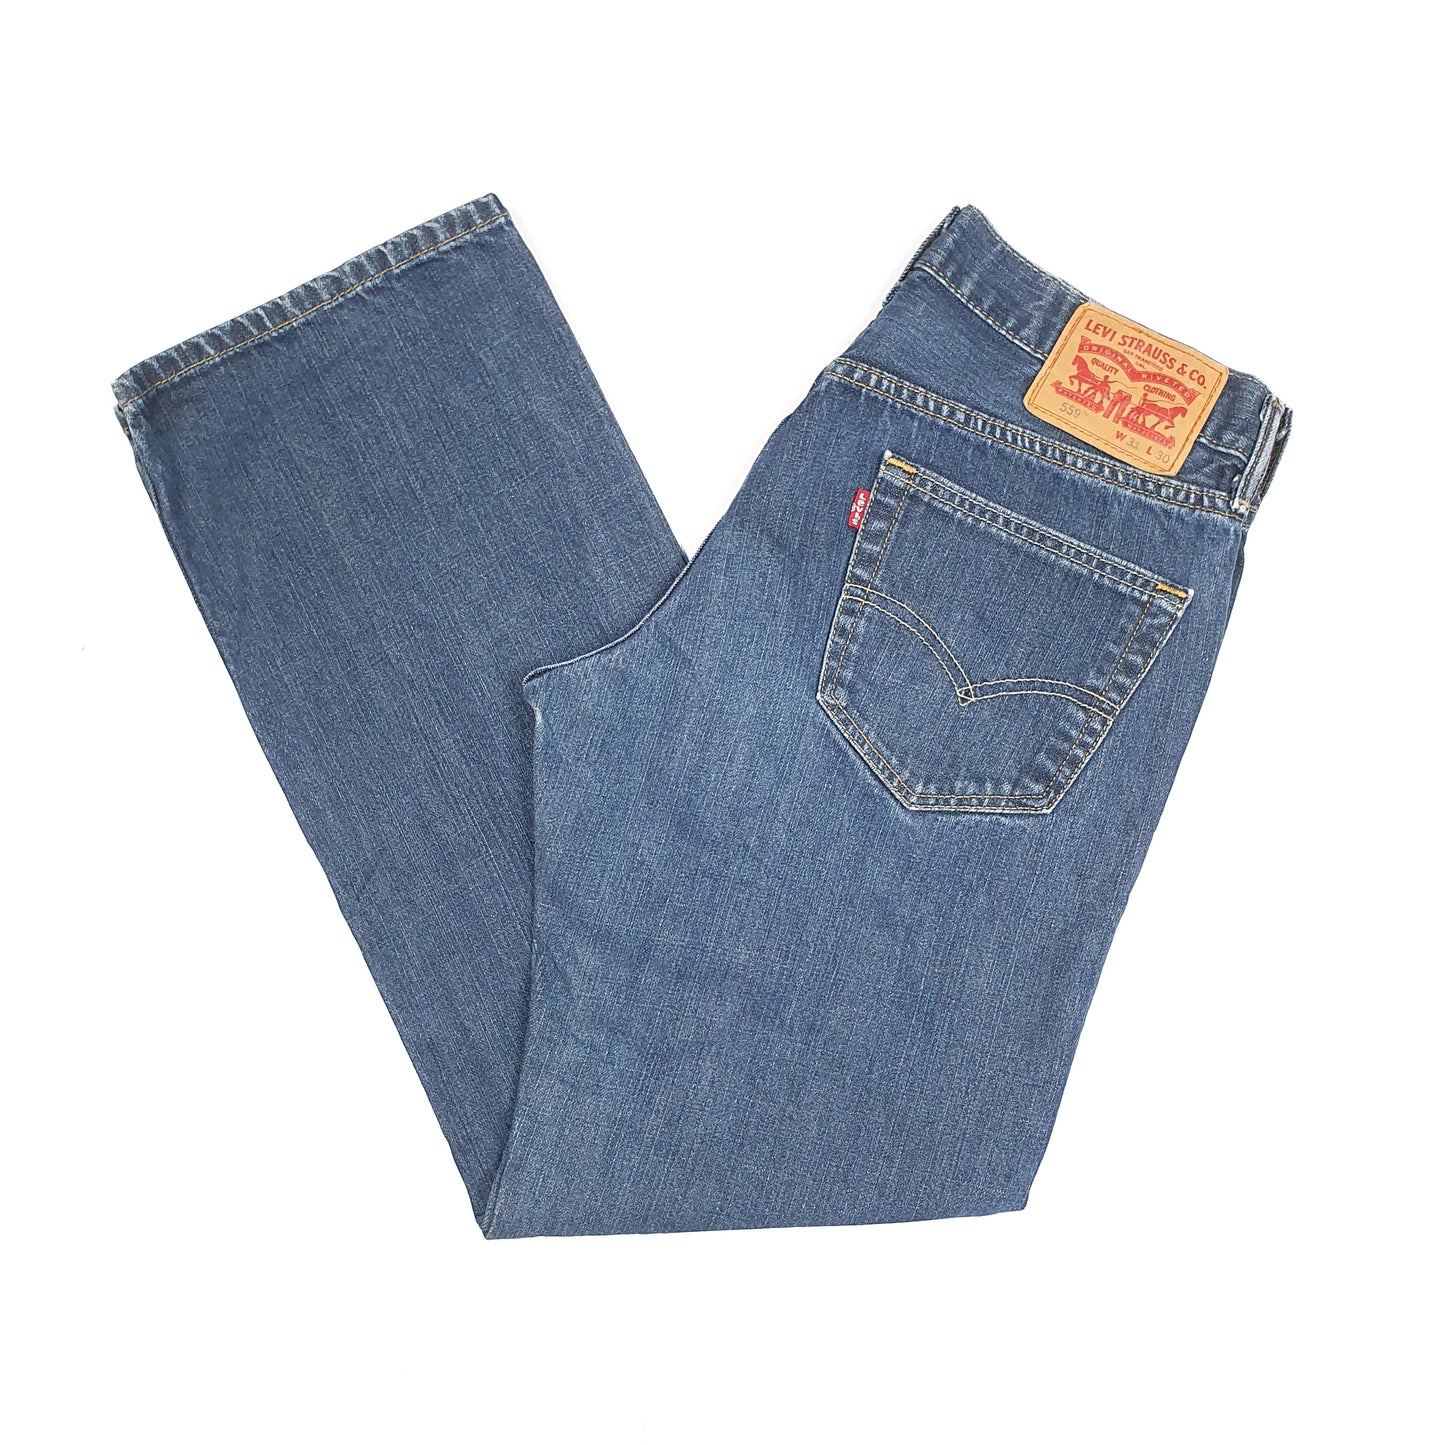 Blue Levis 559 Jeans